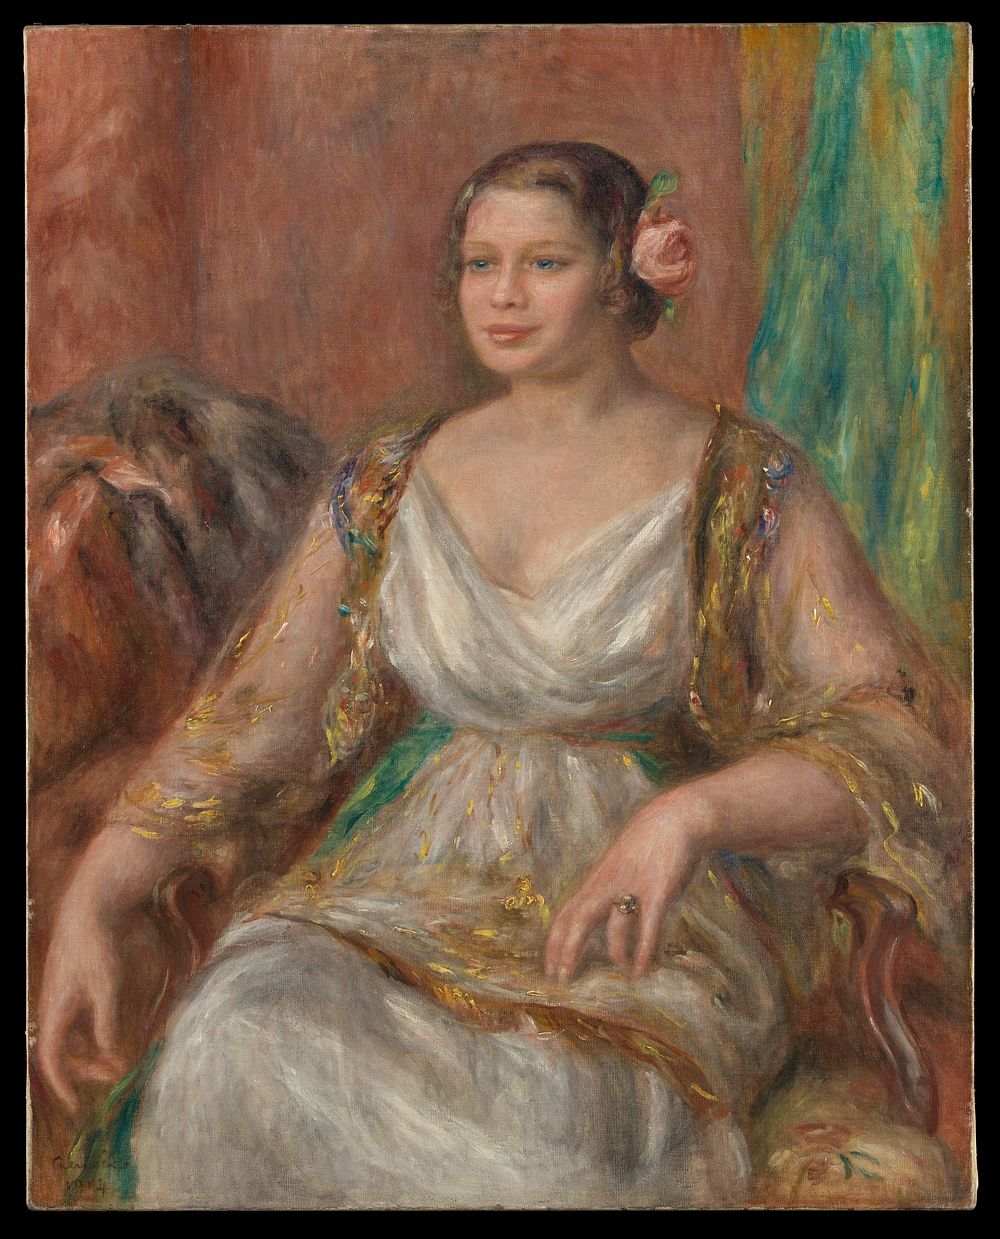 Pierre-Auguste Renoir's Tilla Durieux (Ottilie Godeffroy, 1880&ndash;1971)